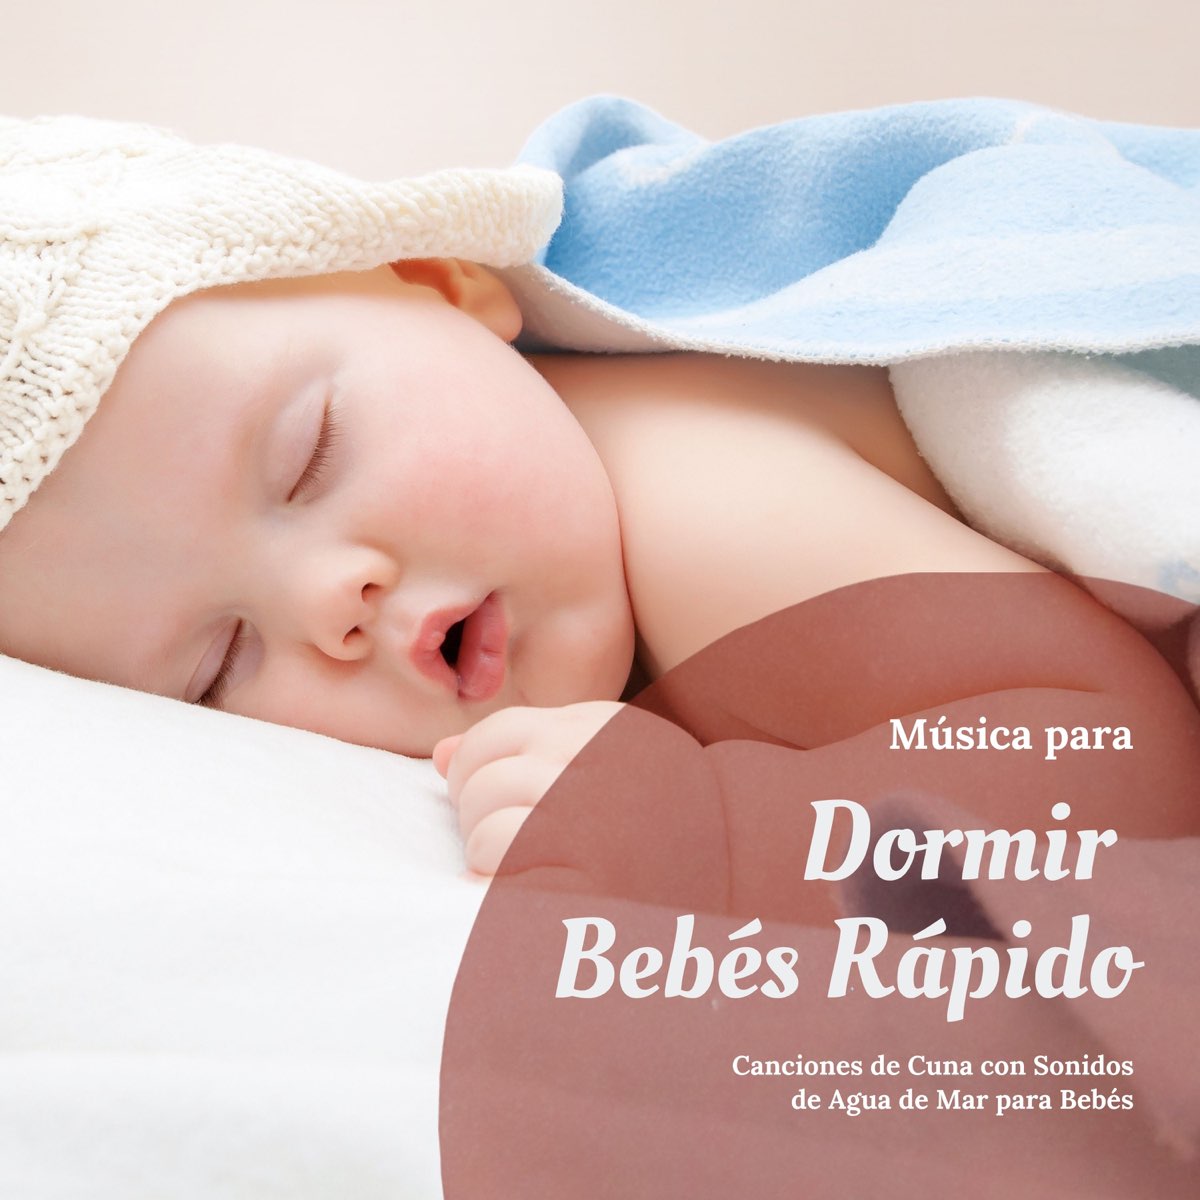 Música para Dormir Bebés Rápido - Canciones de Cuna con Sonidos de Agua de  Mar para Bebés by Siesta del Mar on Apple Music